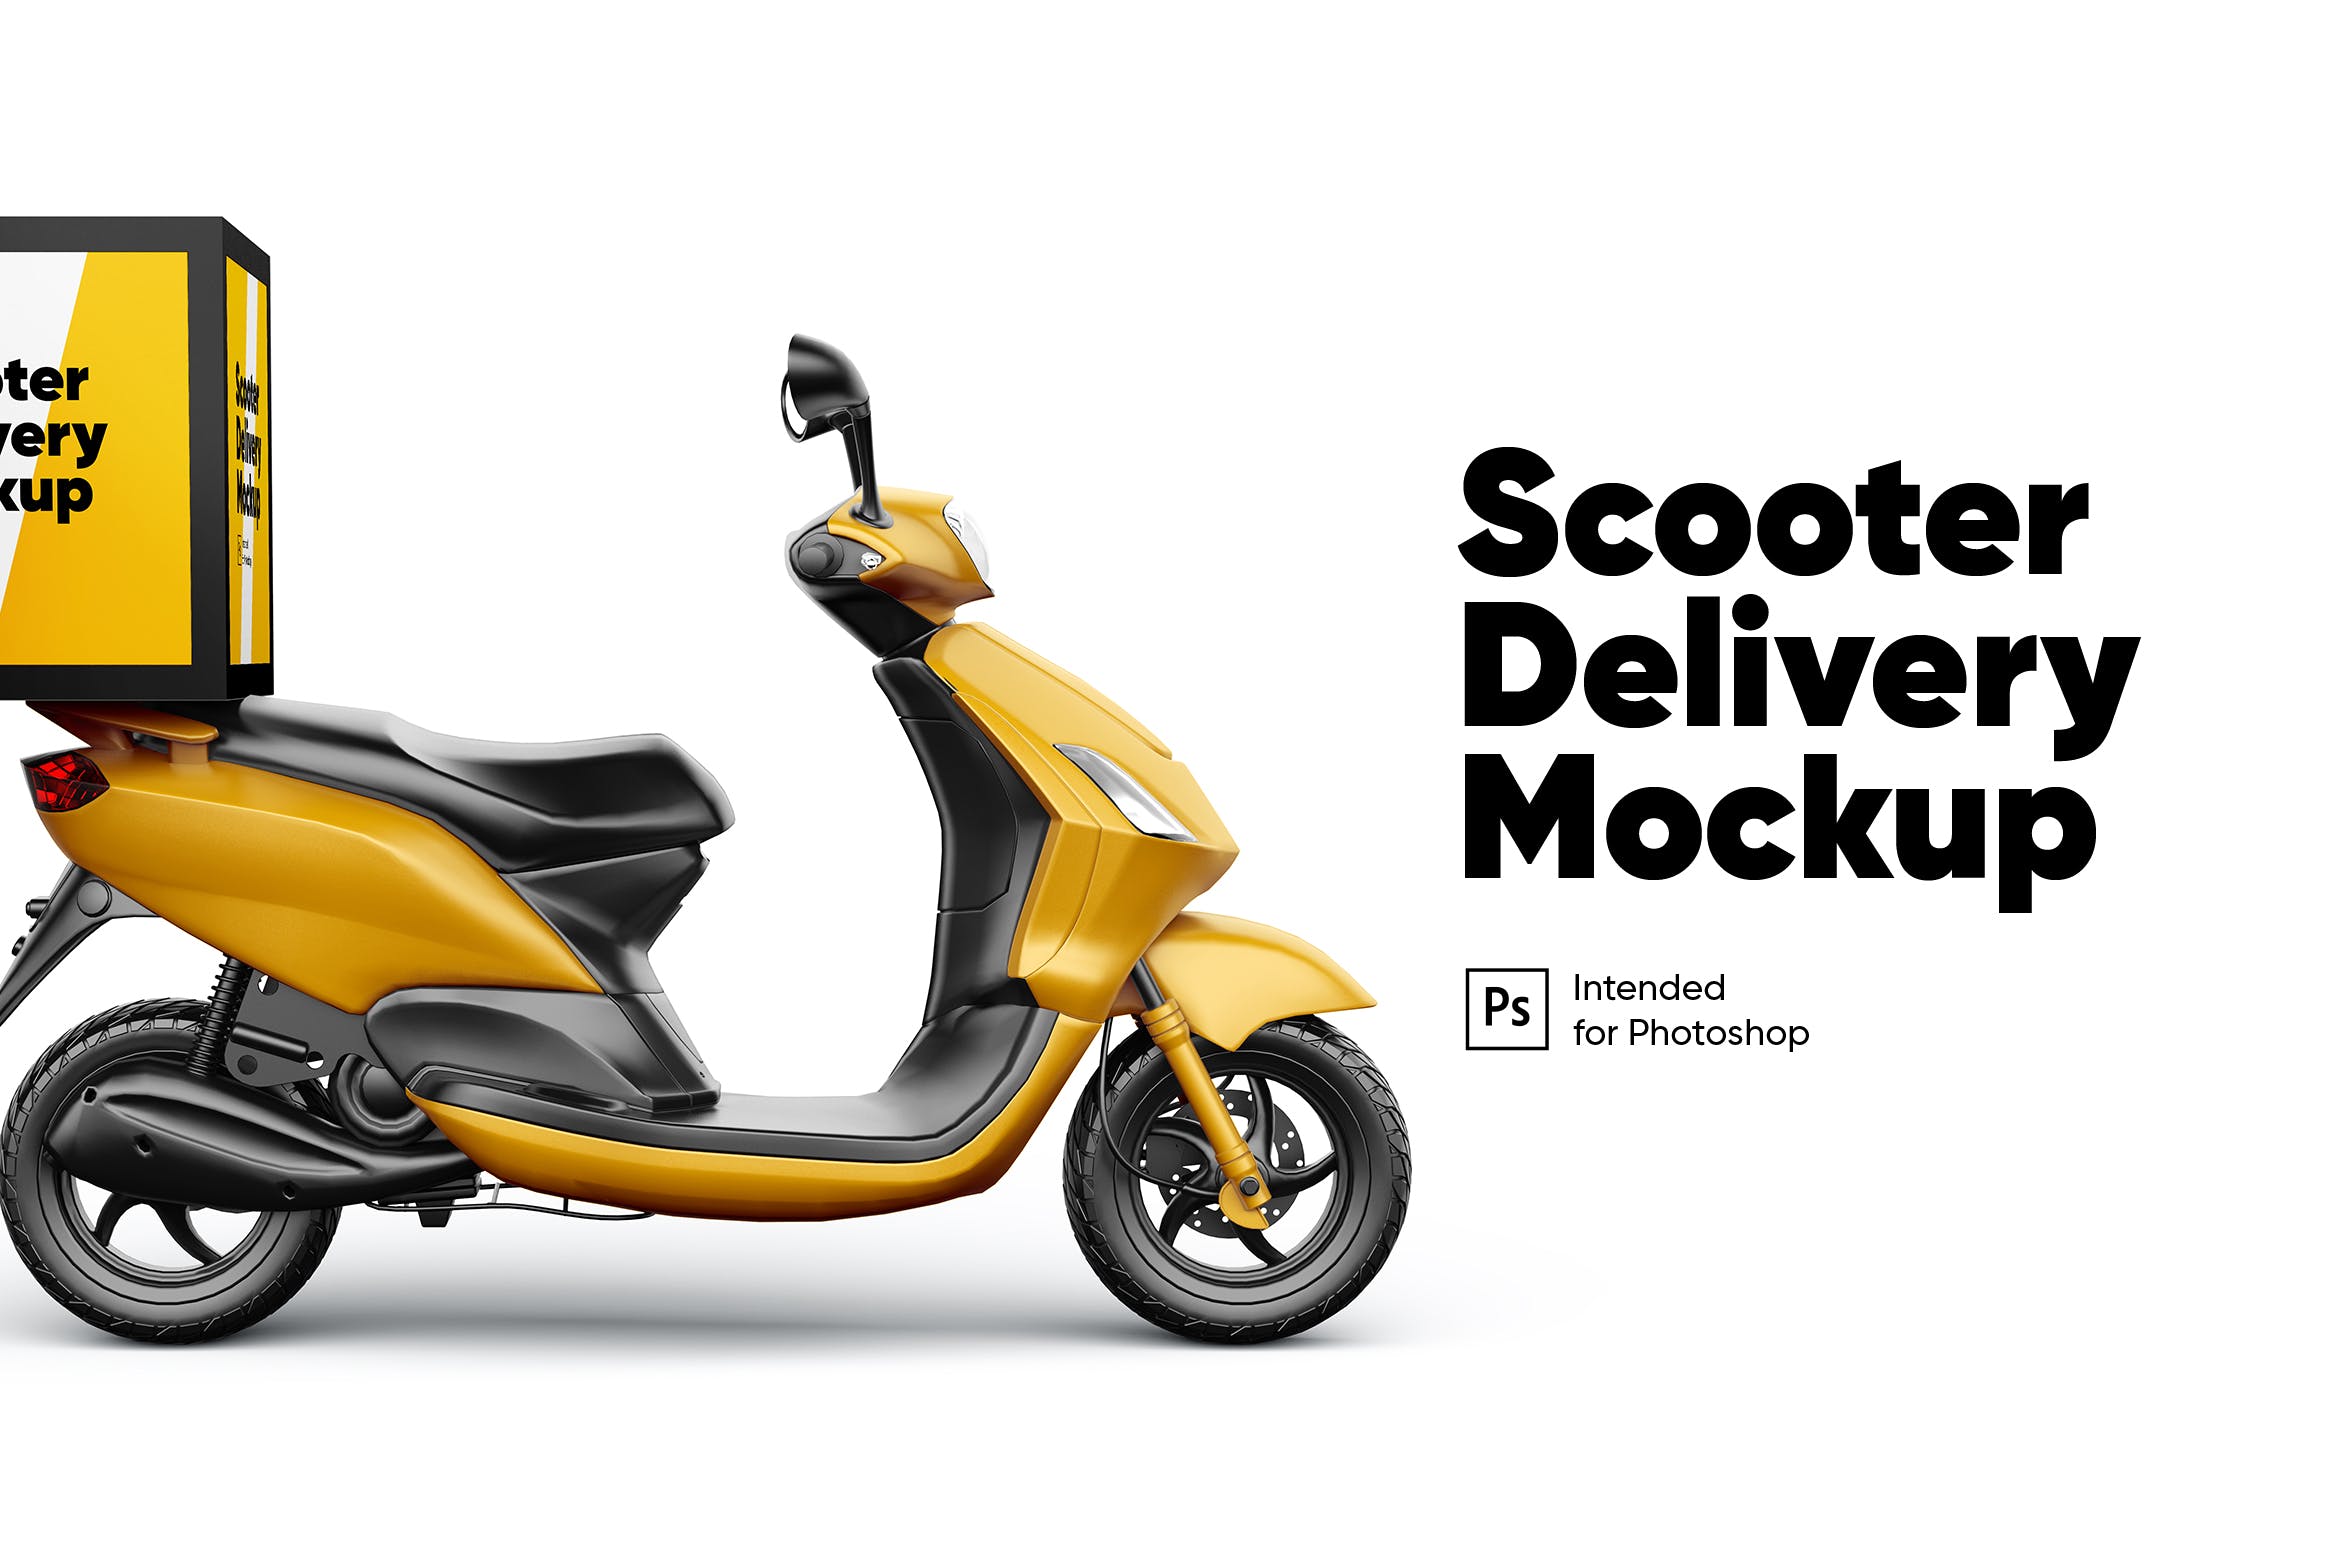 车身广告外卖摩托车设计样机 Scooter Delivery Mockup设计素材模板